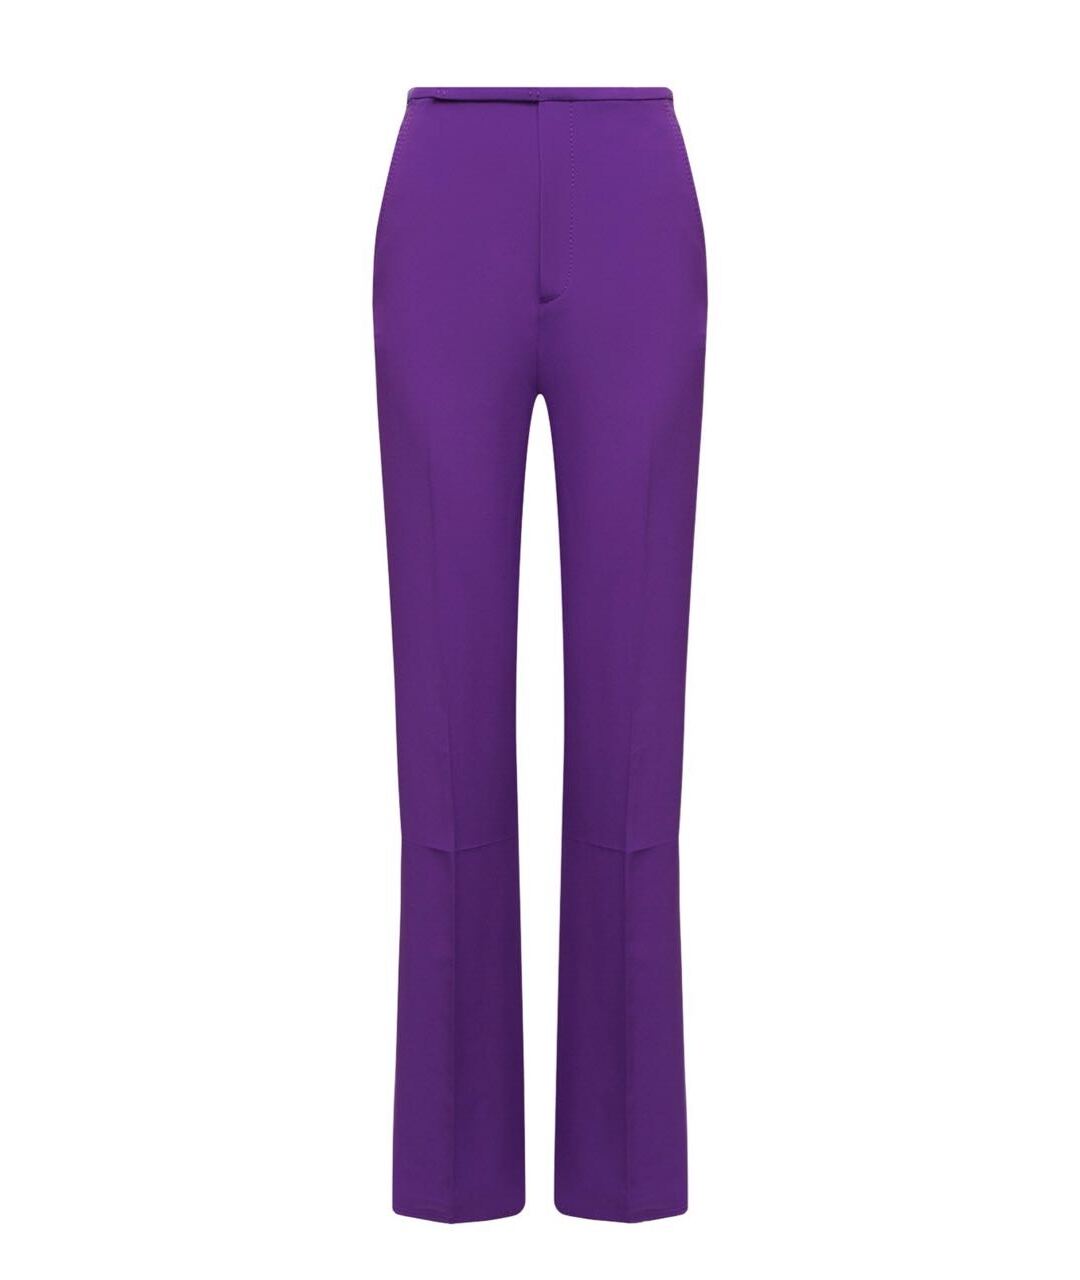 №21 Фиолетовый ацетатный костюм с брюками, фото 2